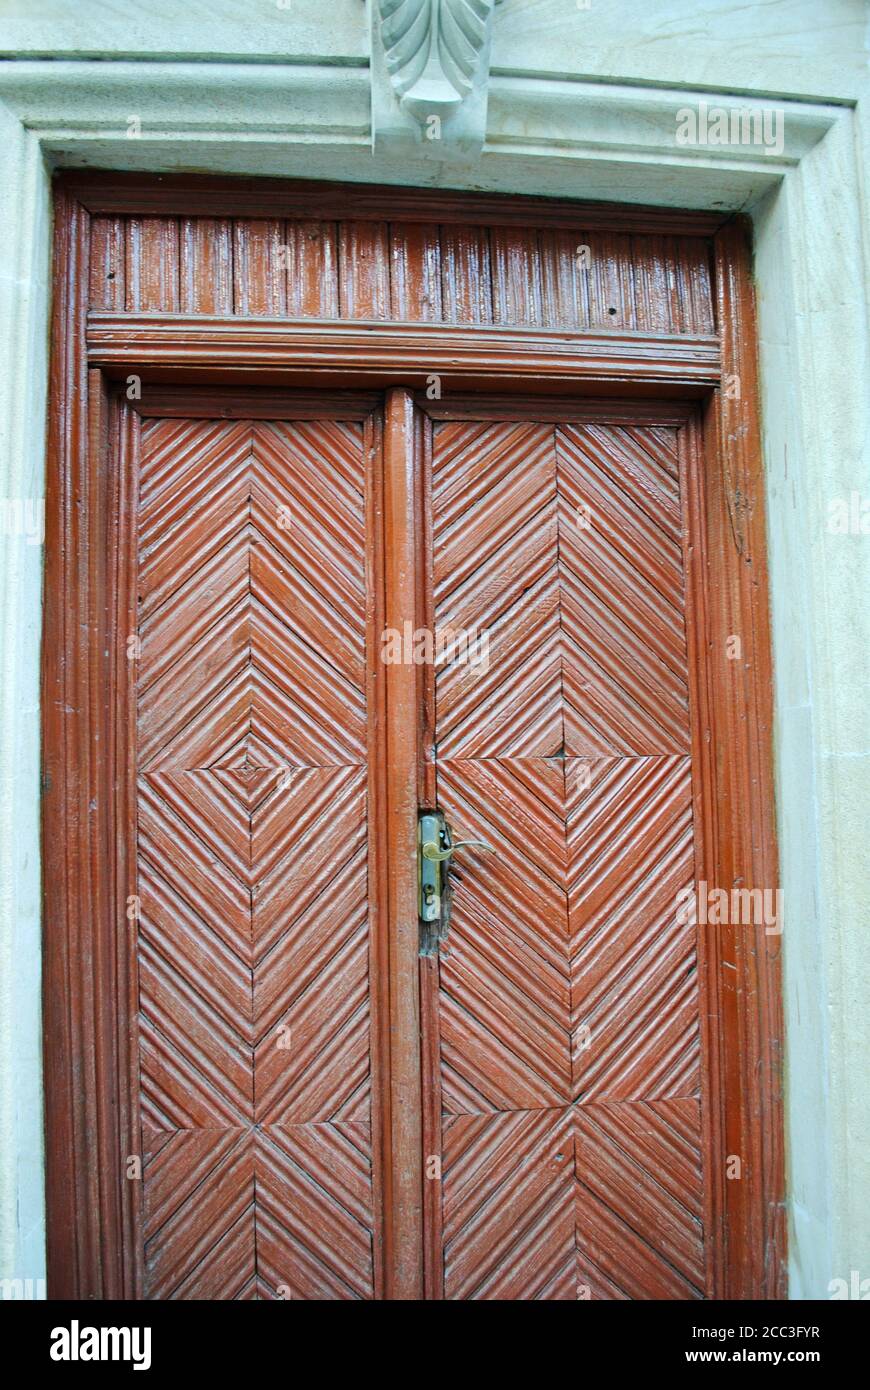 De belles portes à la ville fortifiée de Bakou, site classé au patrimoine mondial de l'UNESCO. Azerbaïdjan Banque D'Images